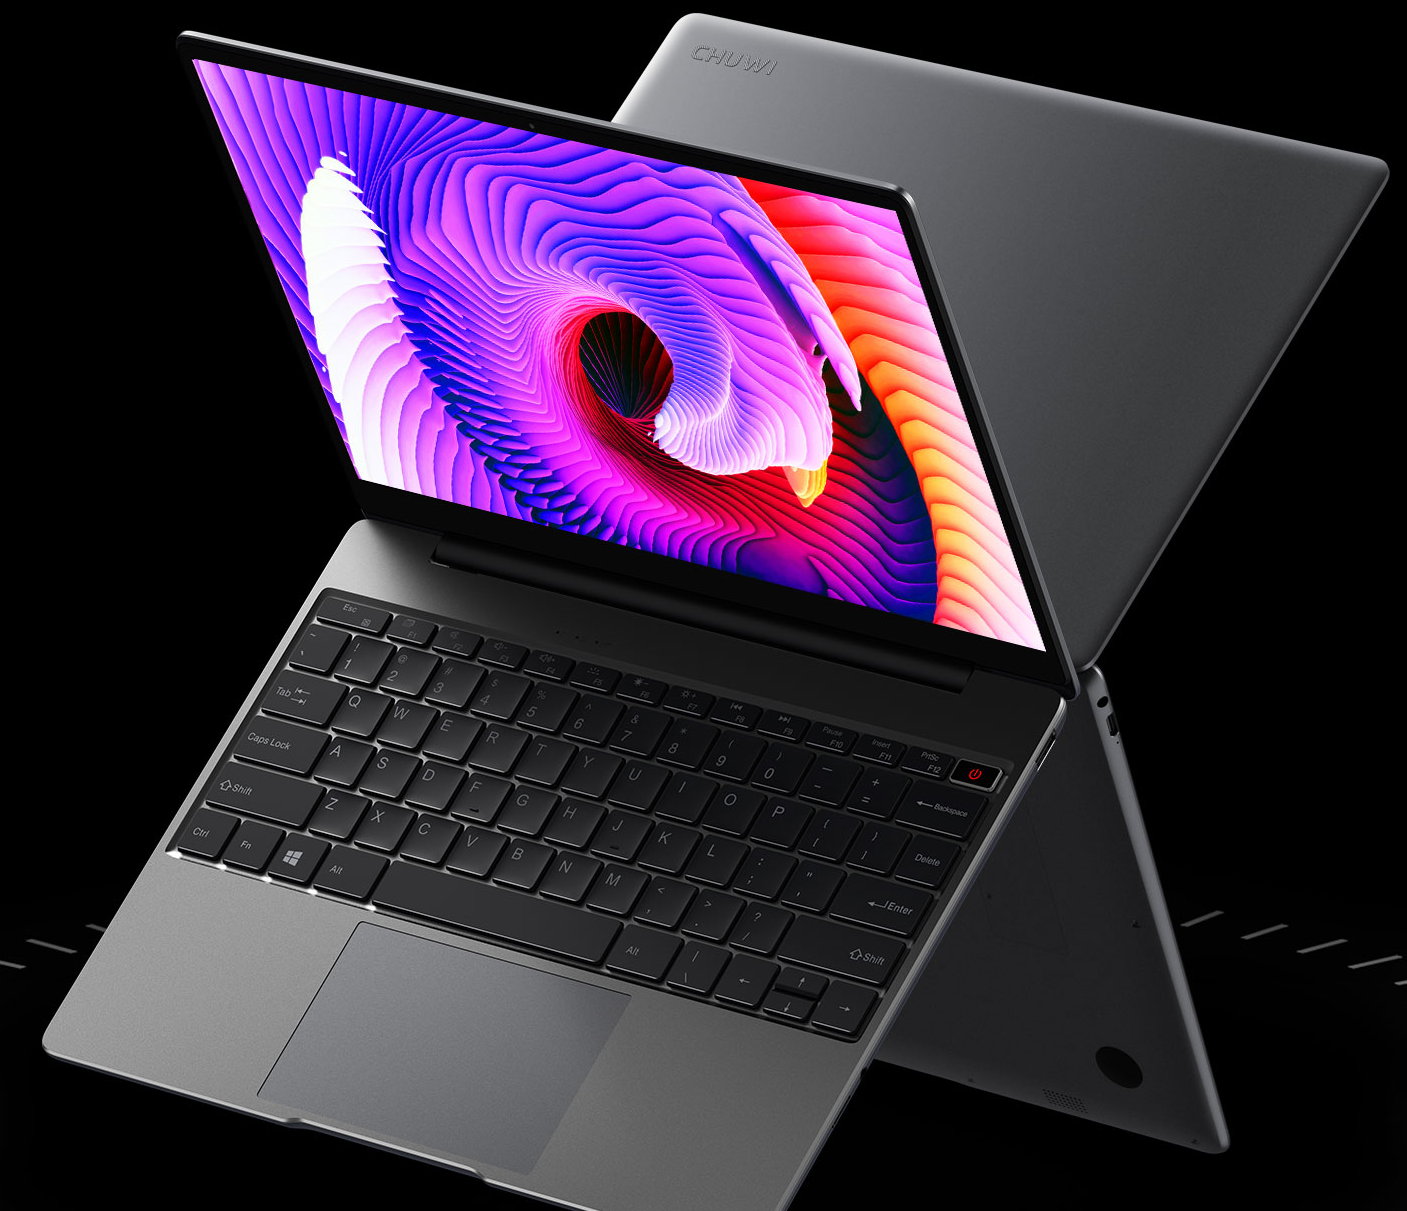 Chuwi actualiza el GemiBook Pro manteniendo un precio súper económico 29